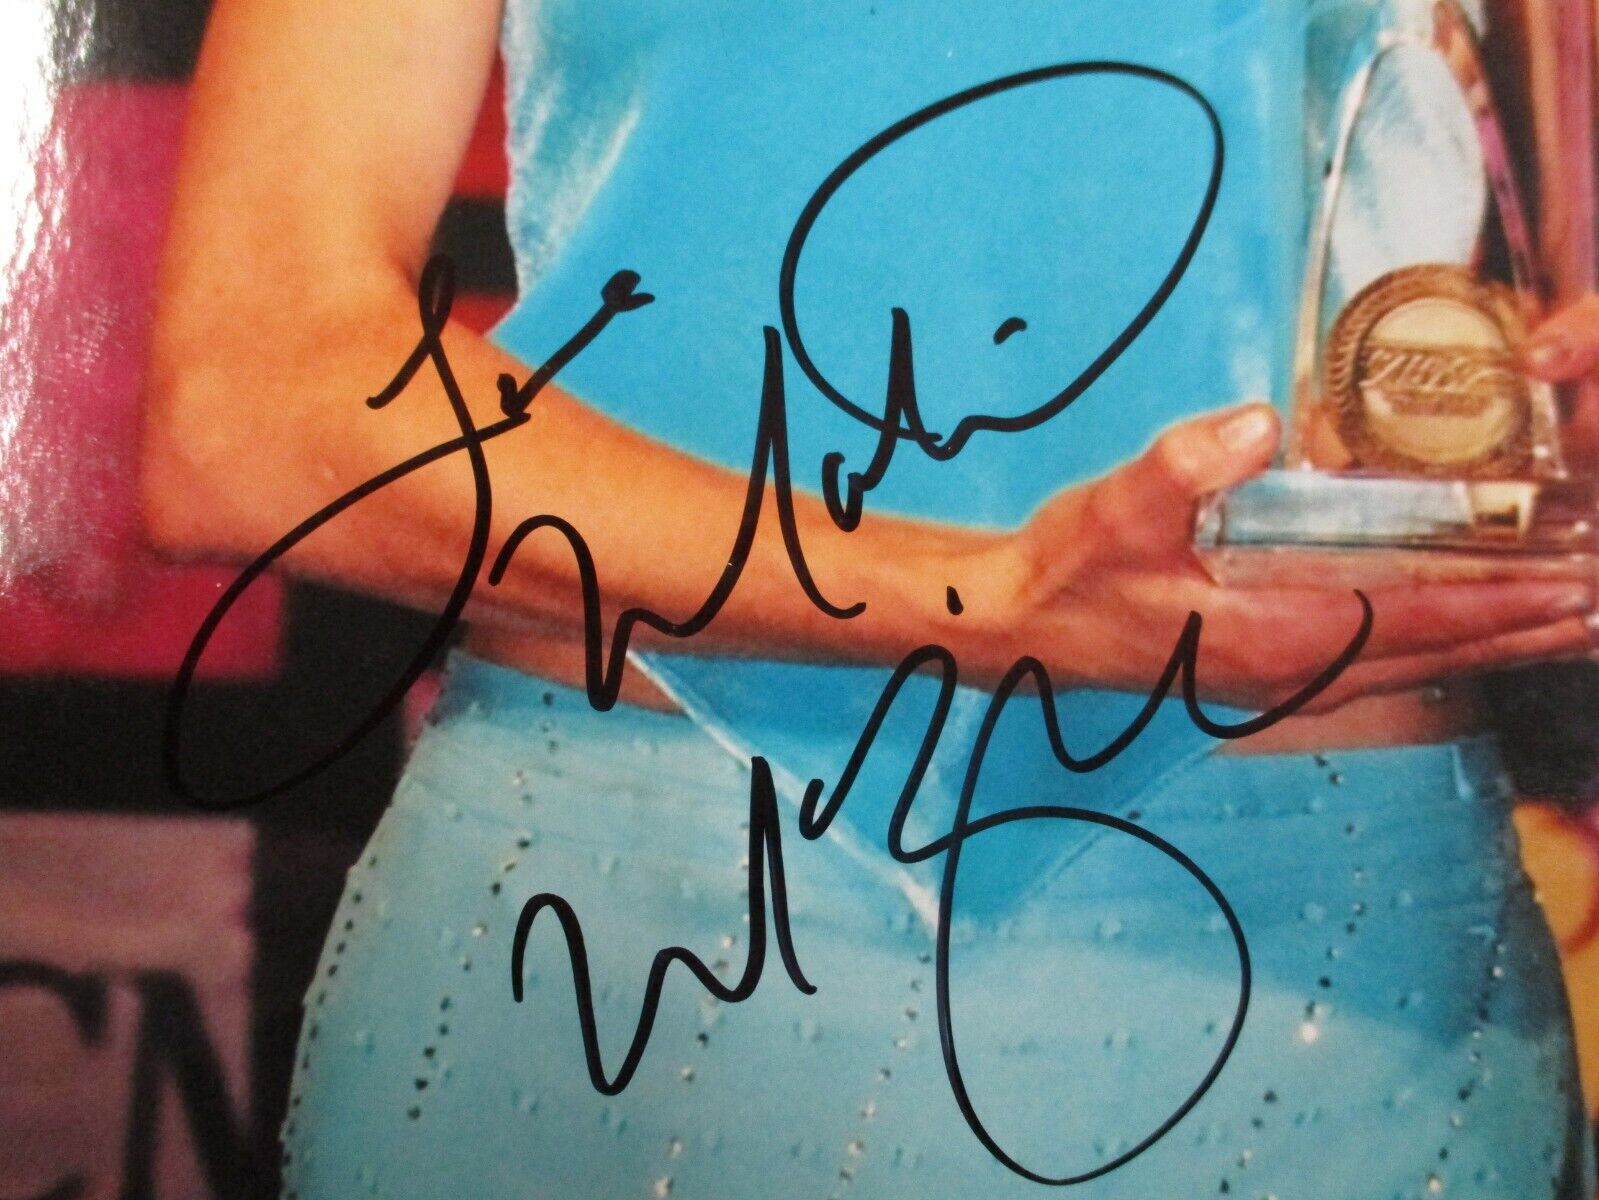 Martina McBride CMA Awards Signed Autographed 8x10 Color Photo BAS